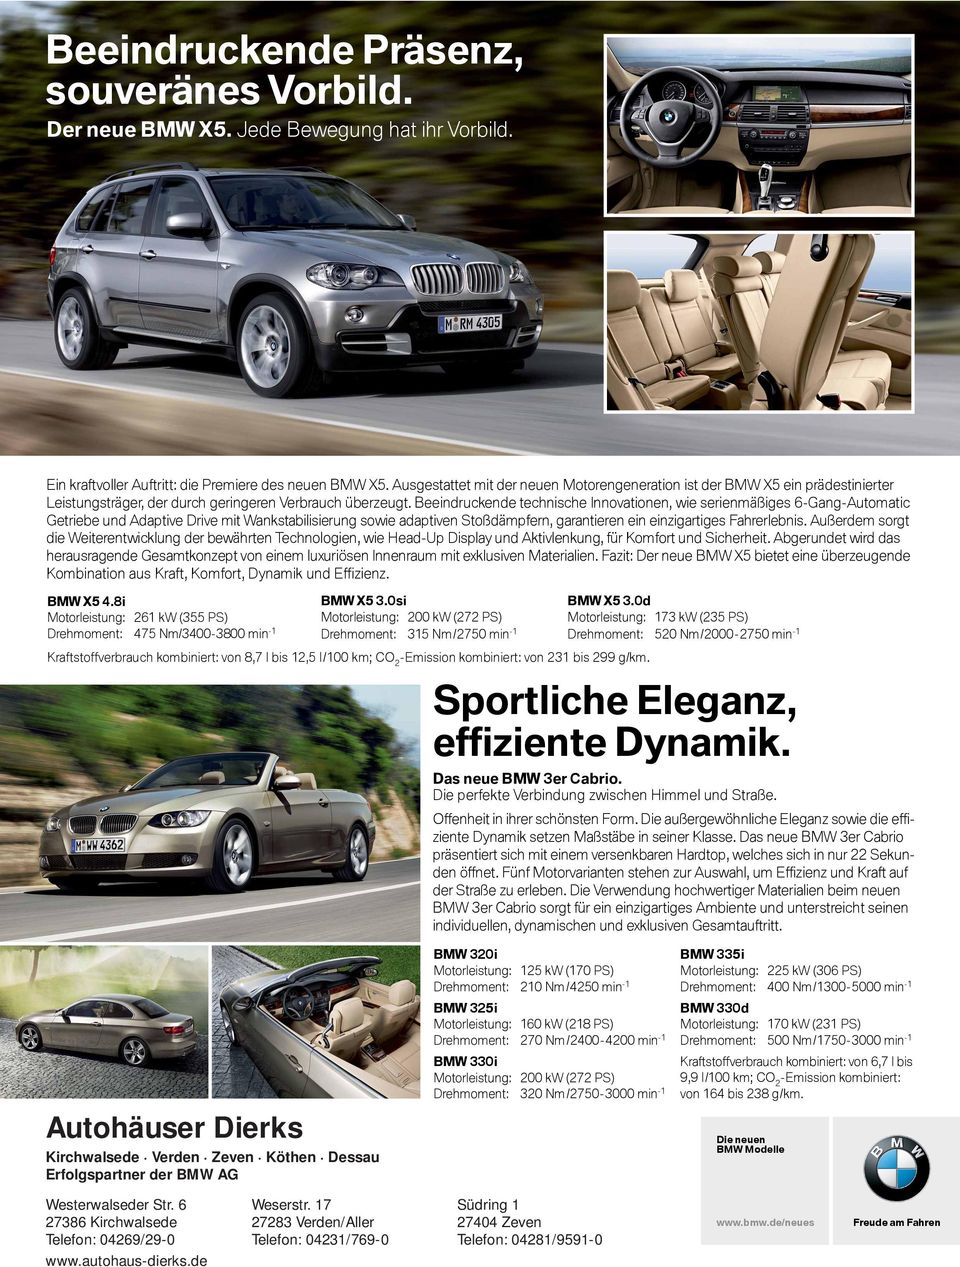 Beeindruckende technische Innovationen, wie serienmäßiges 6-Gang-Auto matic Getriebe Ein kraftvoller und Adaptive Auftritt: die Drive Premiere mit Wankstabilisierung des neuen BMWsowie X5.